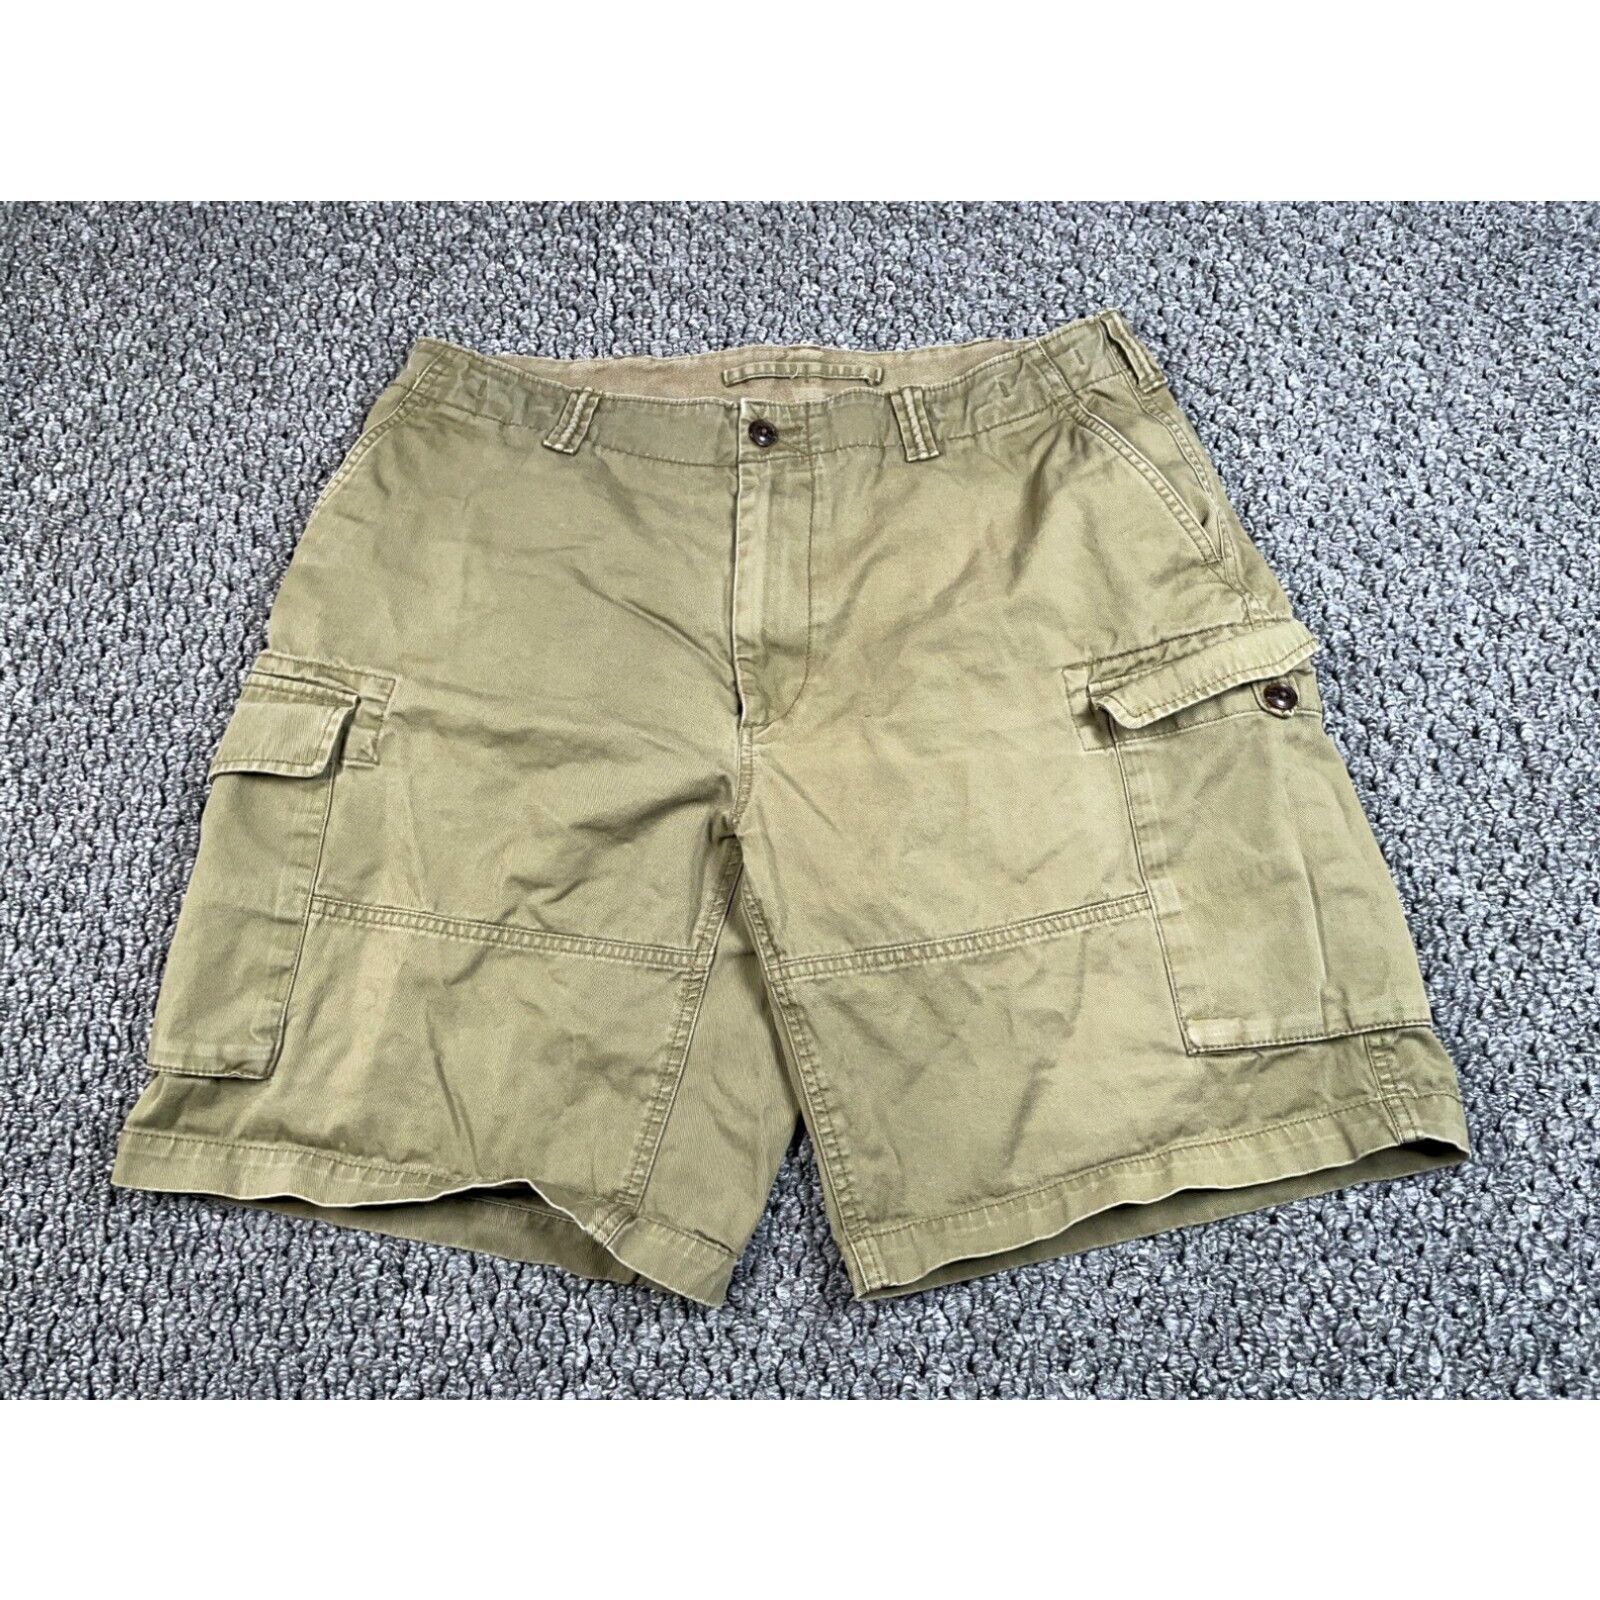 Polo Ralph Lauren Polo Ralph Lauren Cargo Shorts Men's 35 x 9 Green ...